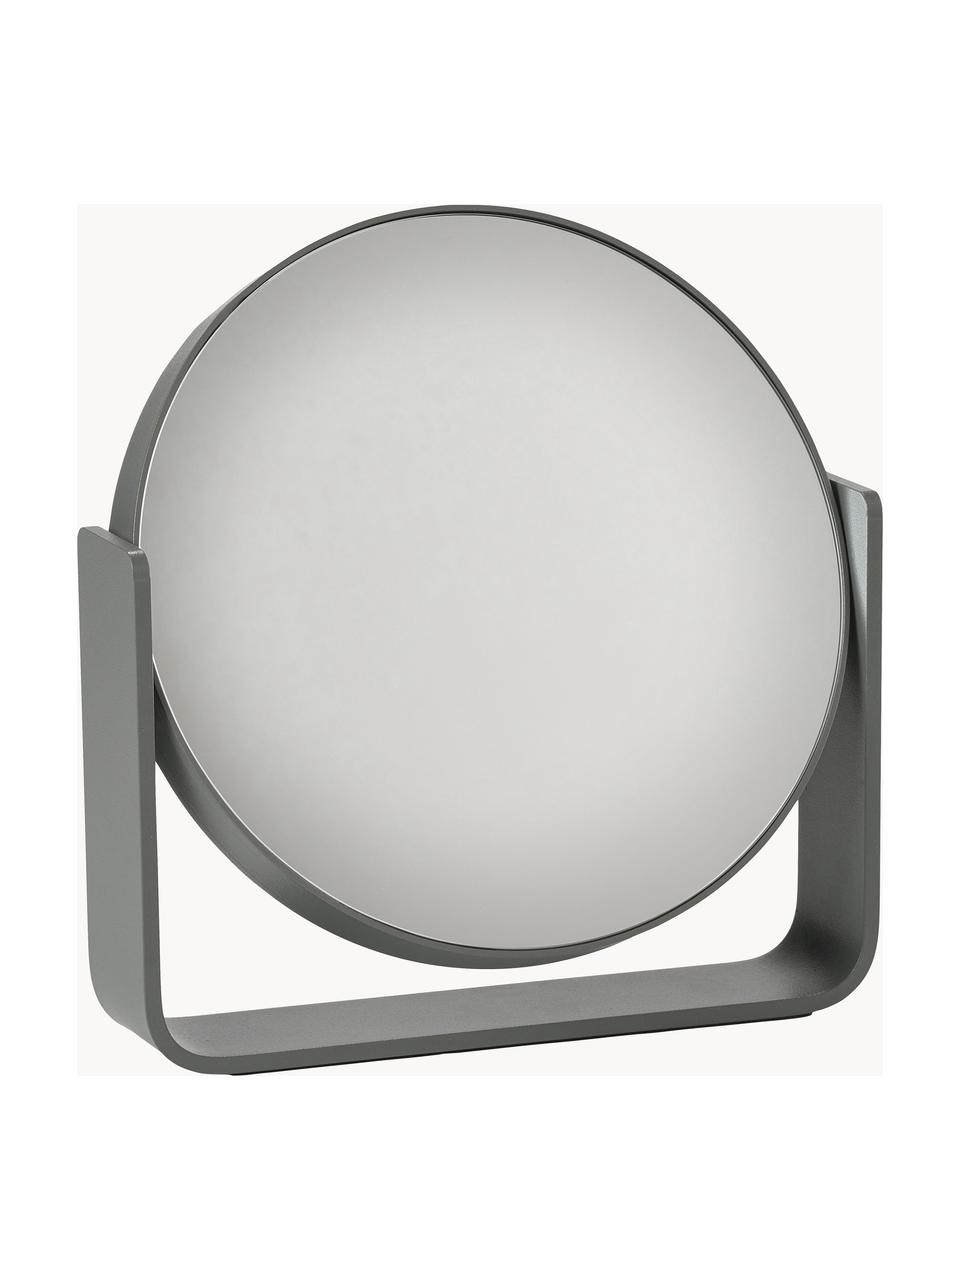 Runder Kosmetikspiegel Ume mit Vergrösserung, Dunkelgrau, B 19 x H 20 cm